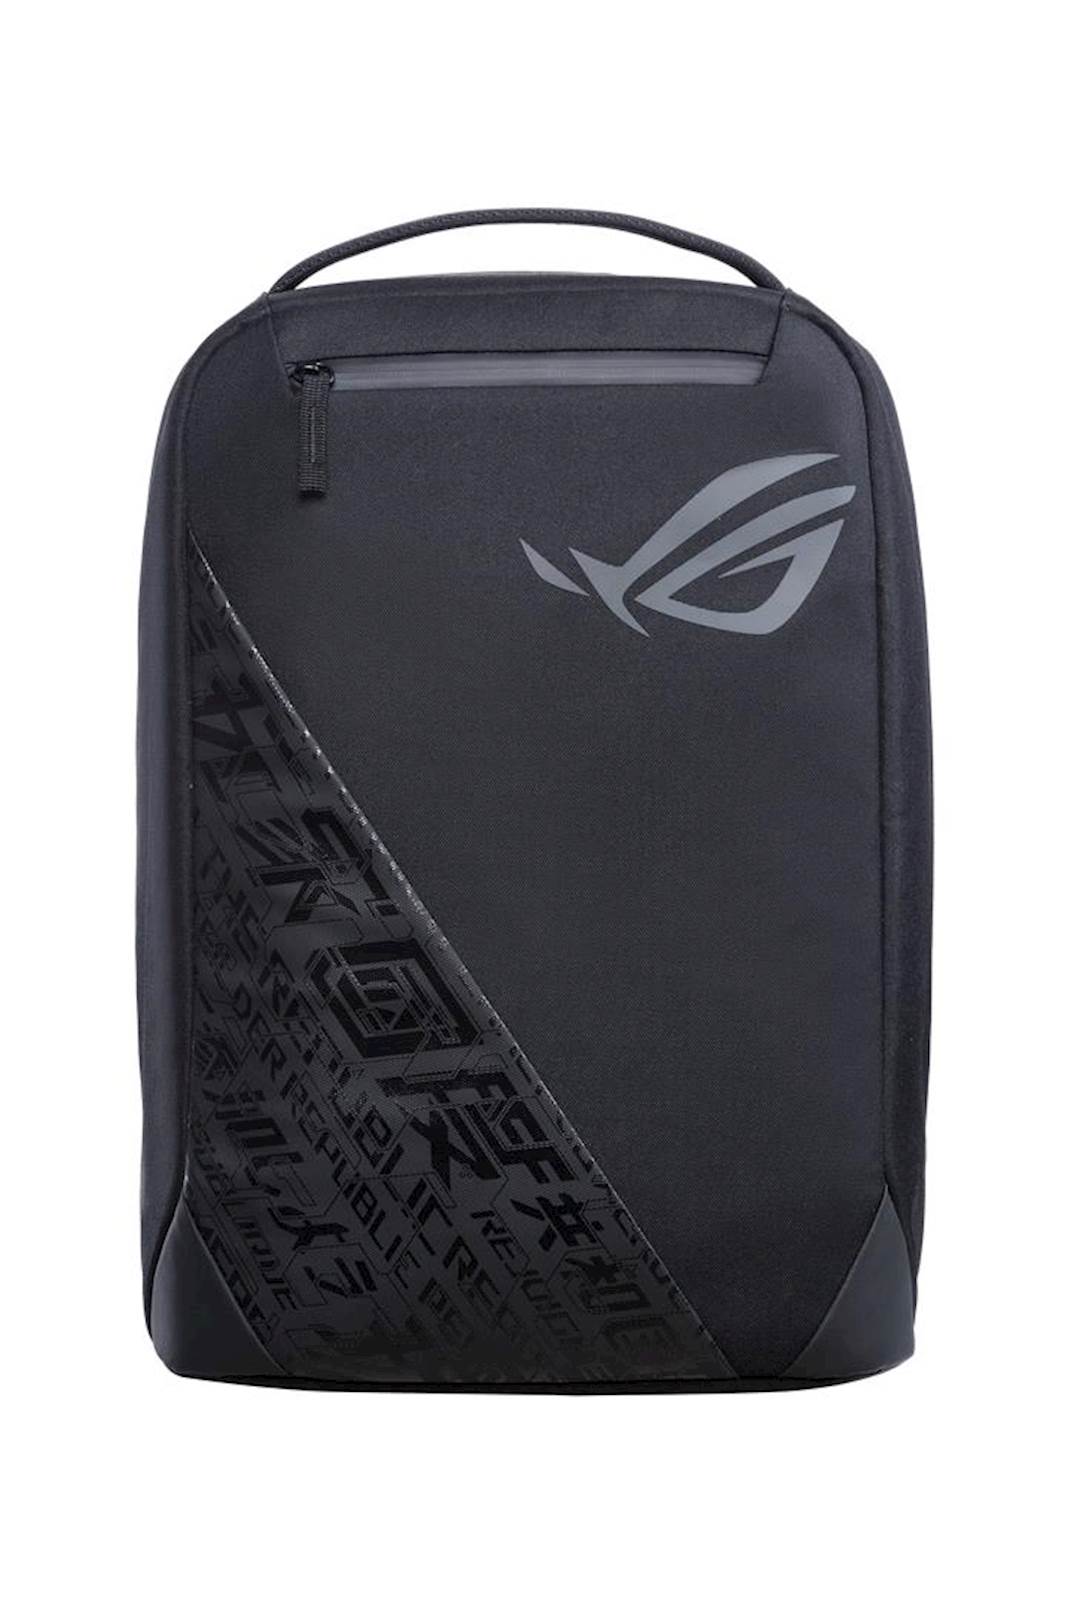 Ruksak ASUS ROG Ranger BP1501 Gaming Backpack crni, za preno